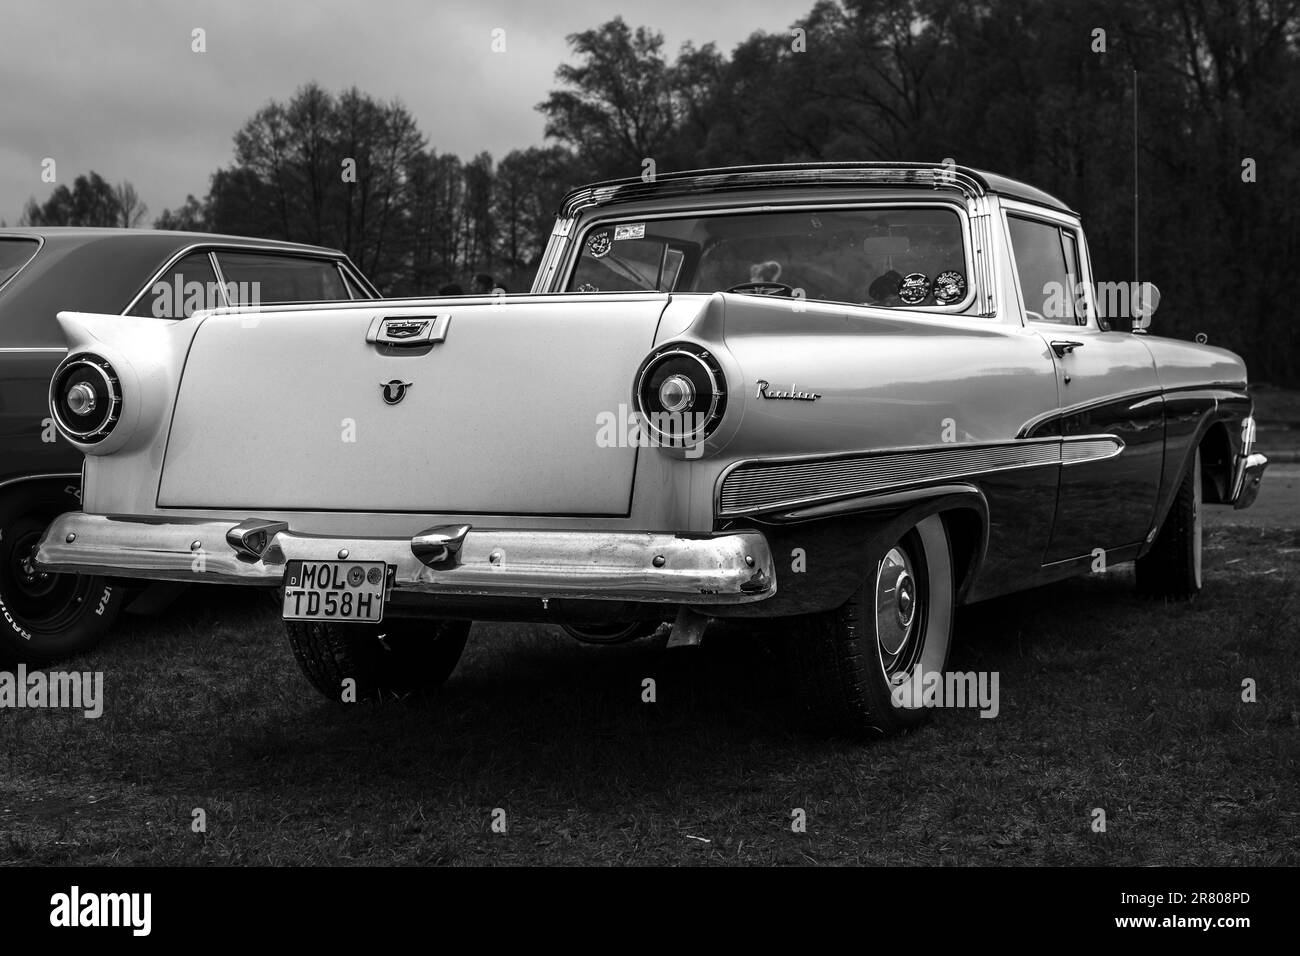 FINOWFURT, DEUTSCHLAND - 06. MAI 2023: Das Coupé-Nutzfahrzeug Ford Ranchero, 1958. Rückansicht. Schwarz auf Weiß. Rennfestival 2023. Stockfoto